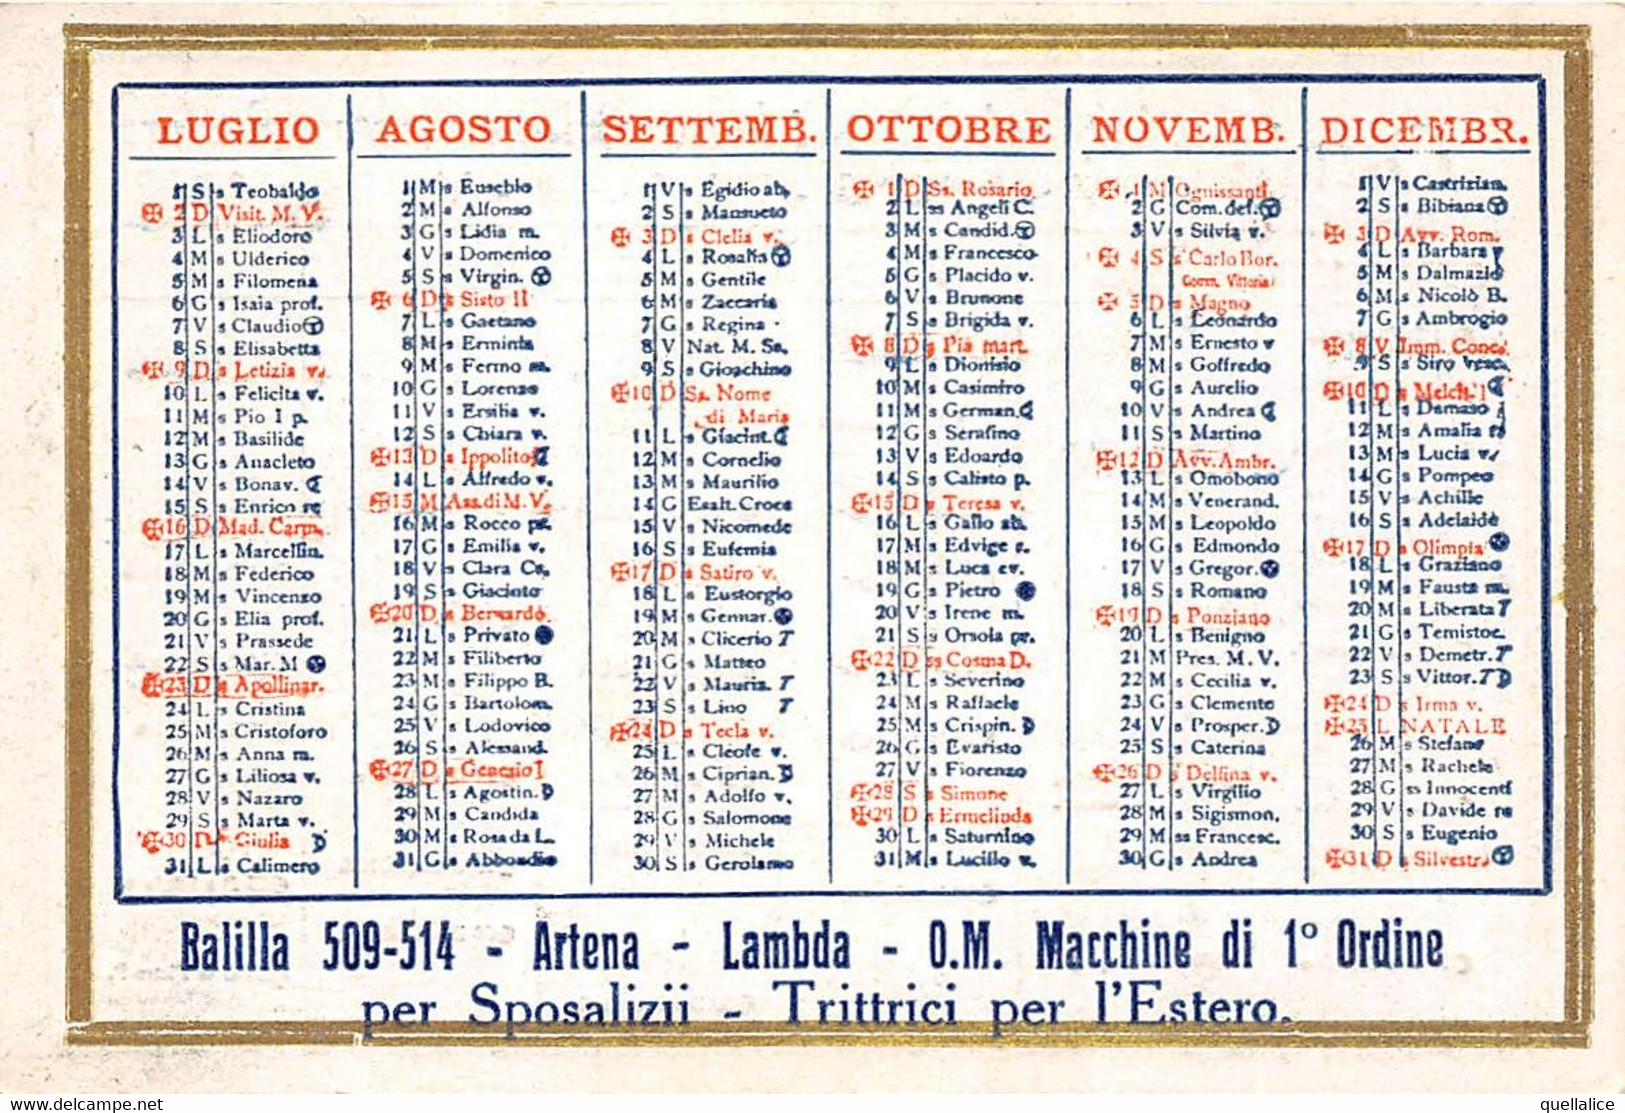 02089 "TORINO - DAVID AUTONOLEGGIO DI LUSSO CON E SENZA CONDUTTORE - CALENDARIETTO 1933" ORIG - Tamaño Grande : 1921-40